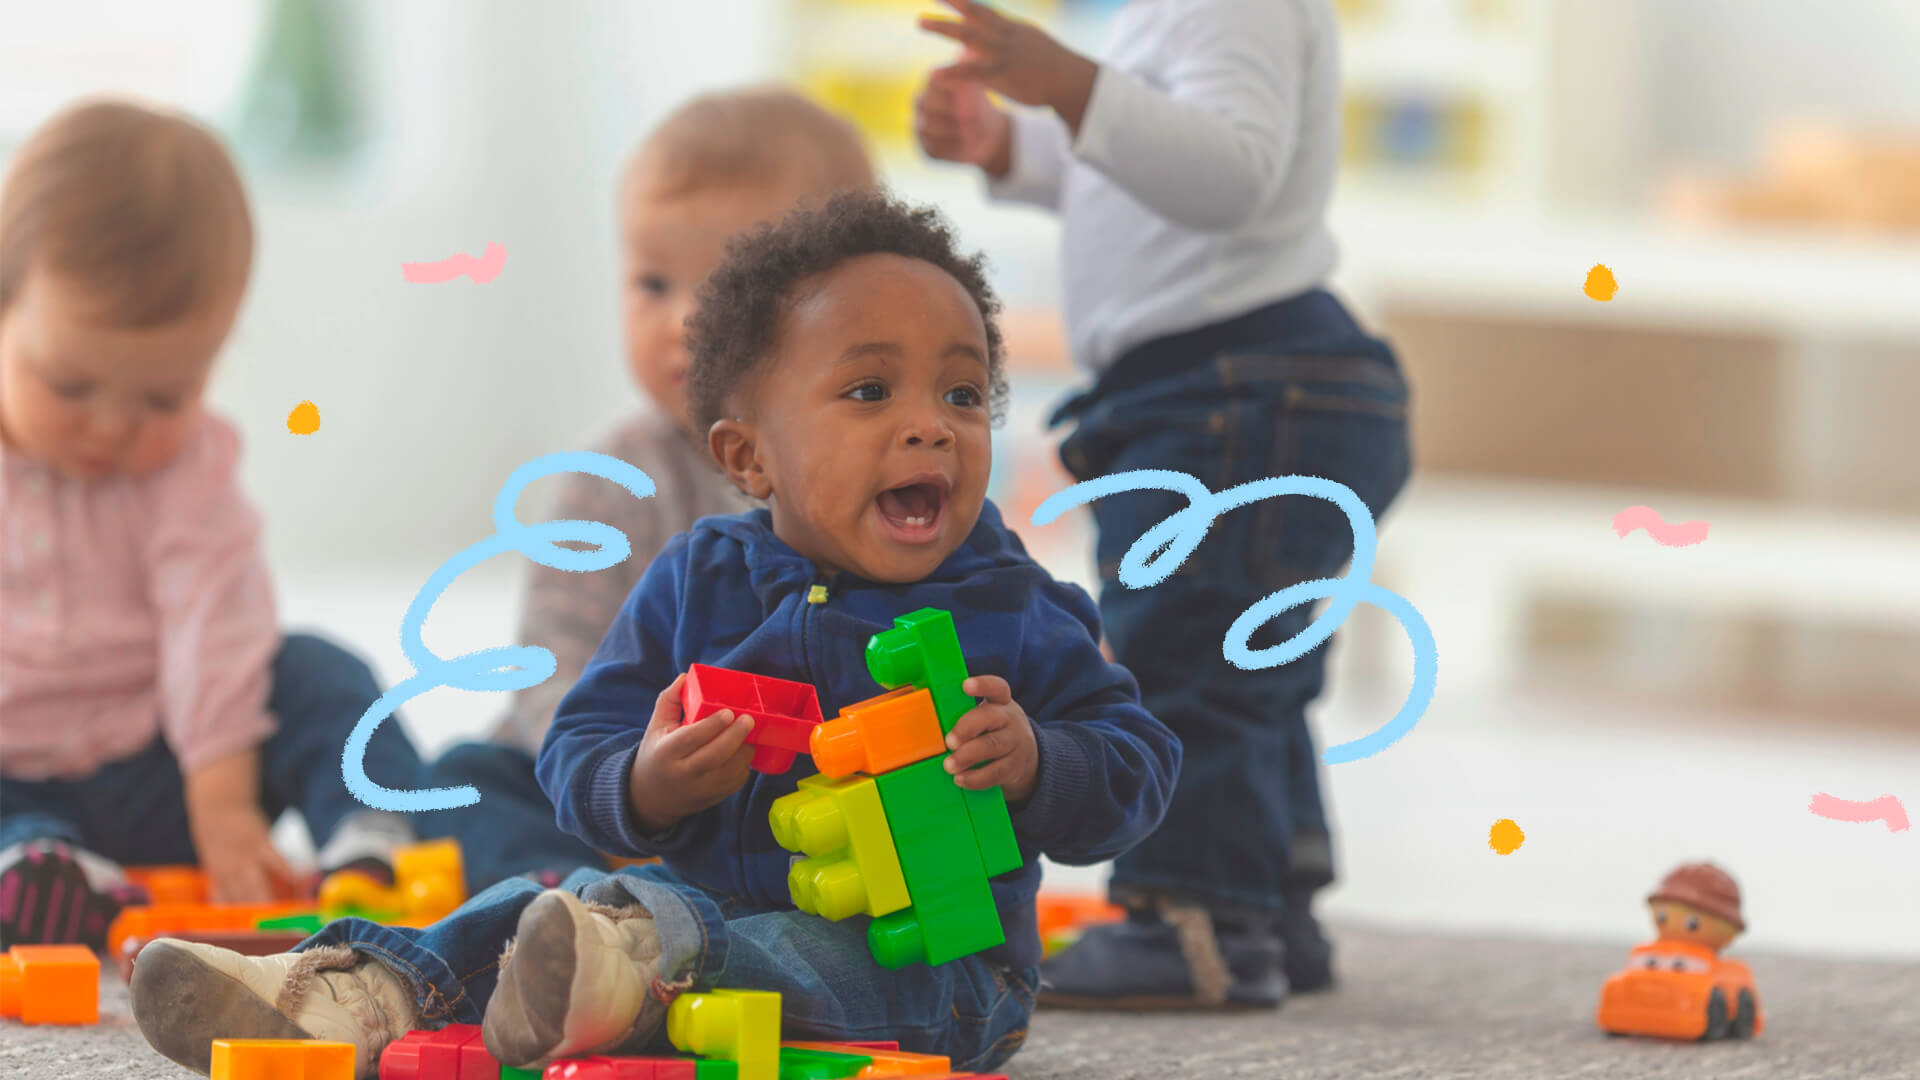 Foto de um bebê brincando com peças coloridas de montar. Ele é negro e usa roupa azul escuro. Atrás dele, tem outros bebês. A matéria é sobre os marcos do desenvolvimento infantil.